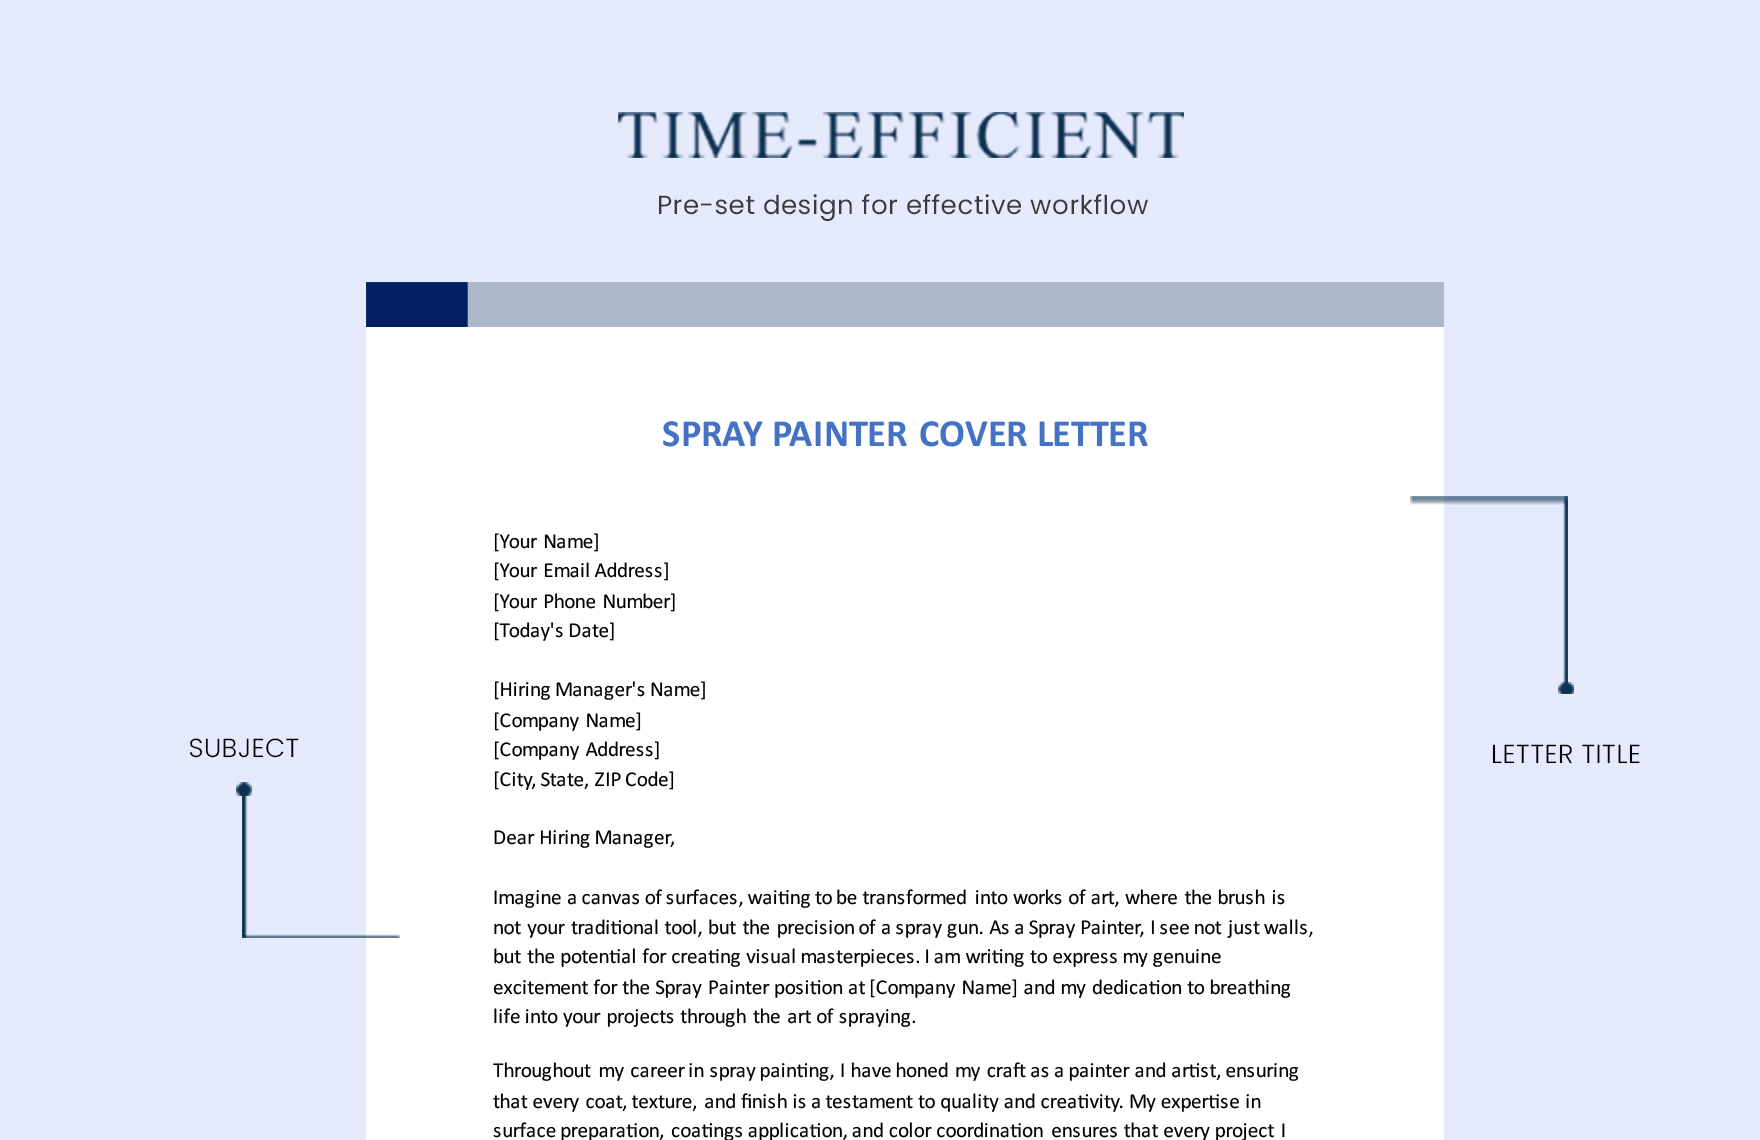 Spray Painter Cover Letter